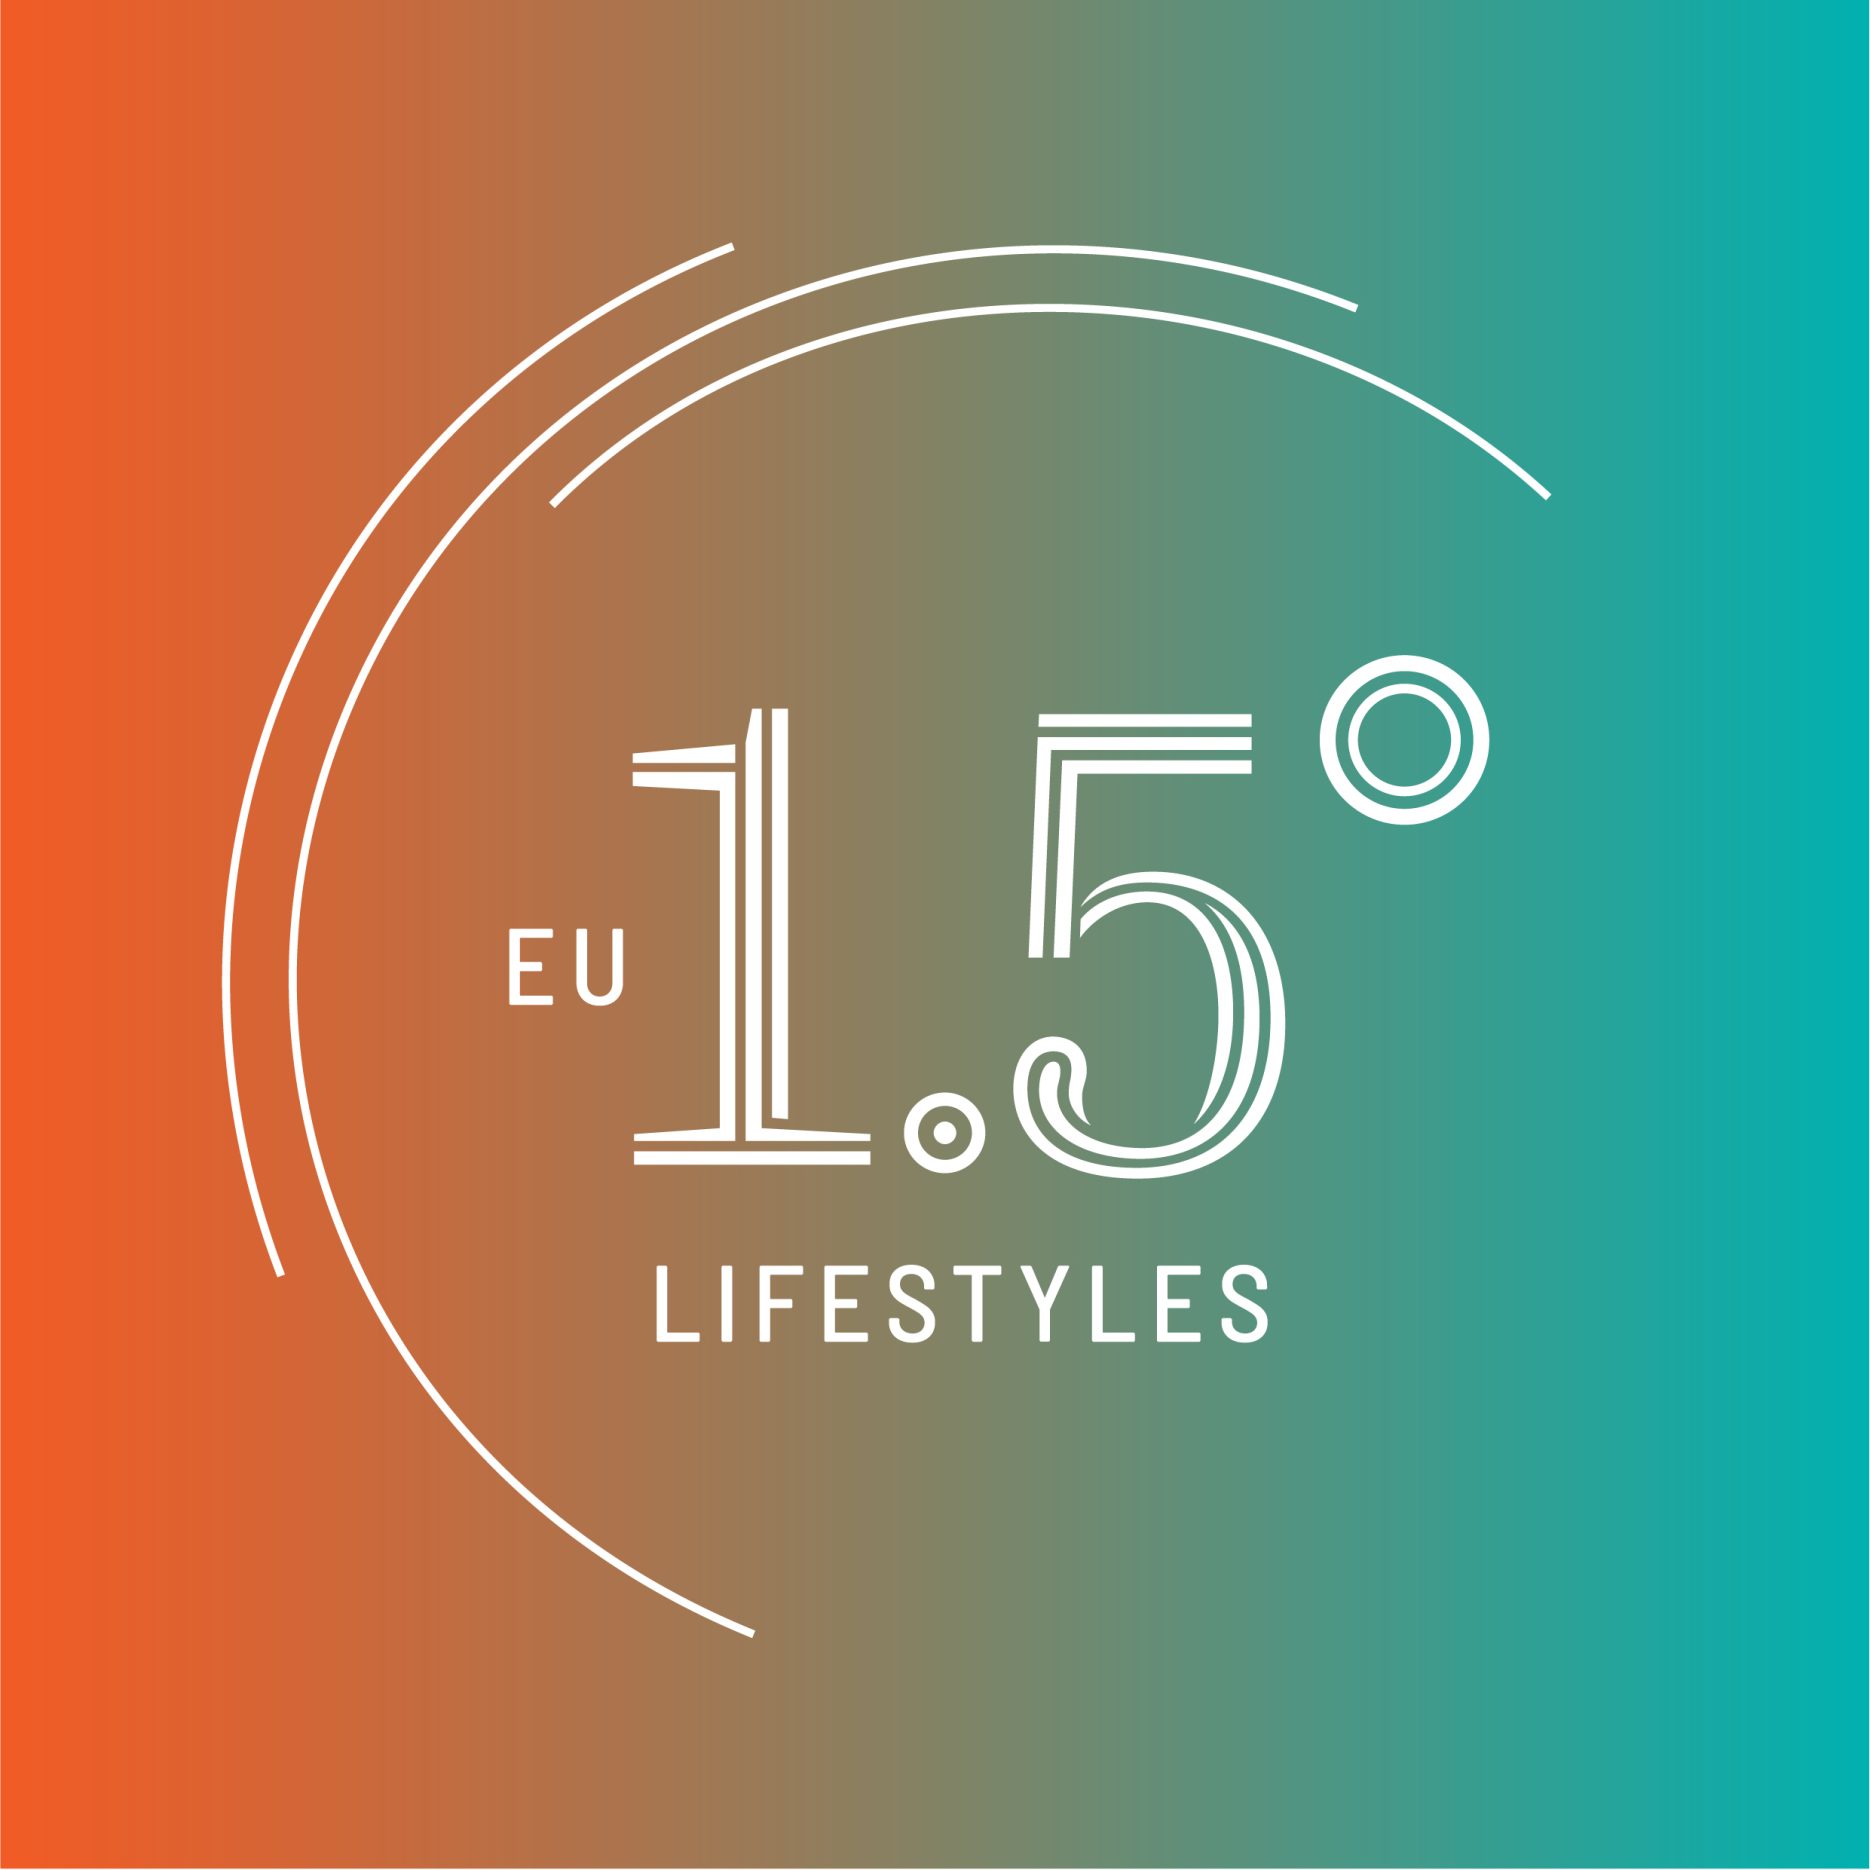 Das Bild zeigt das Logo des EU 1,5° Lifestyles Projekts